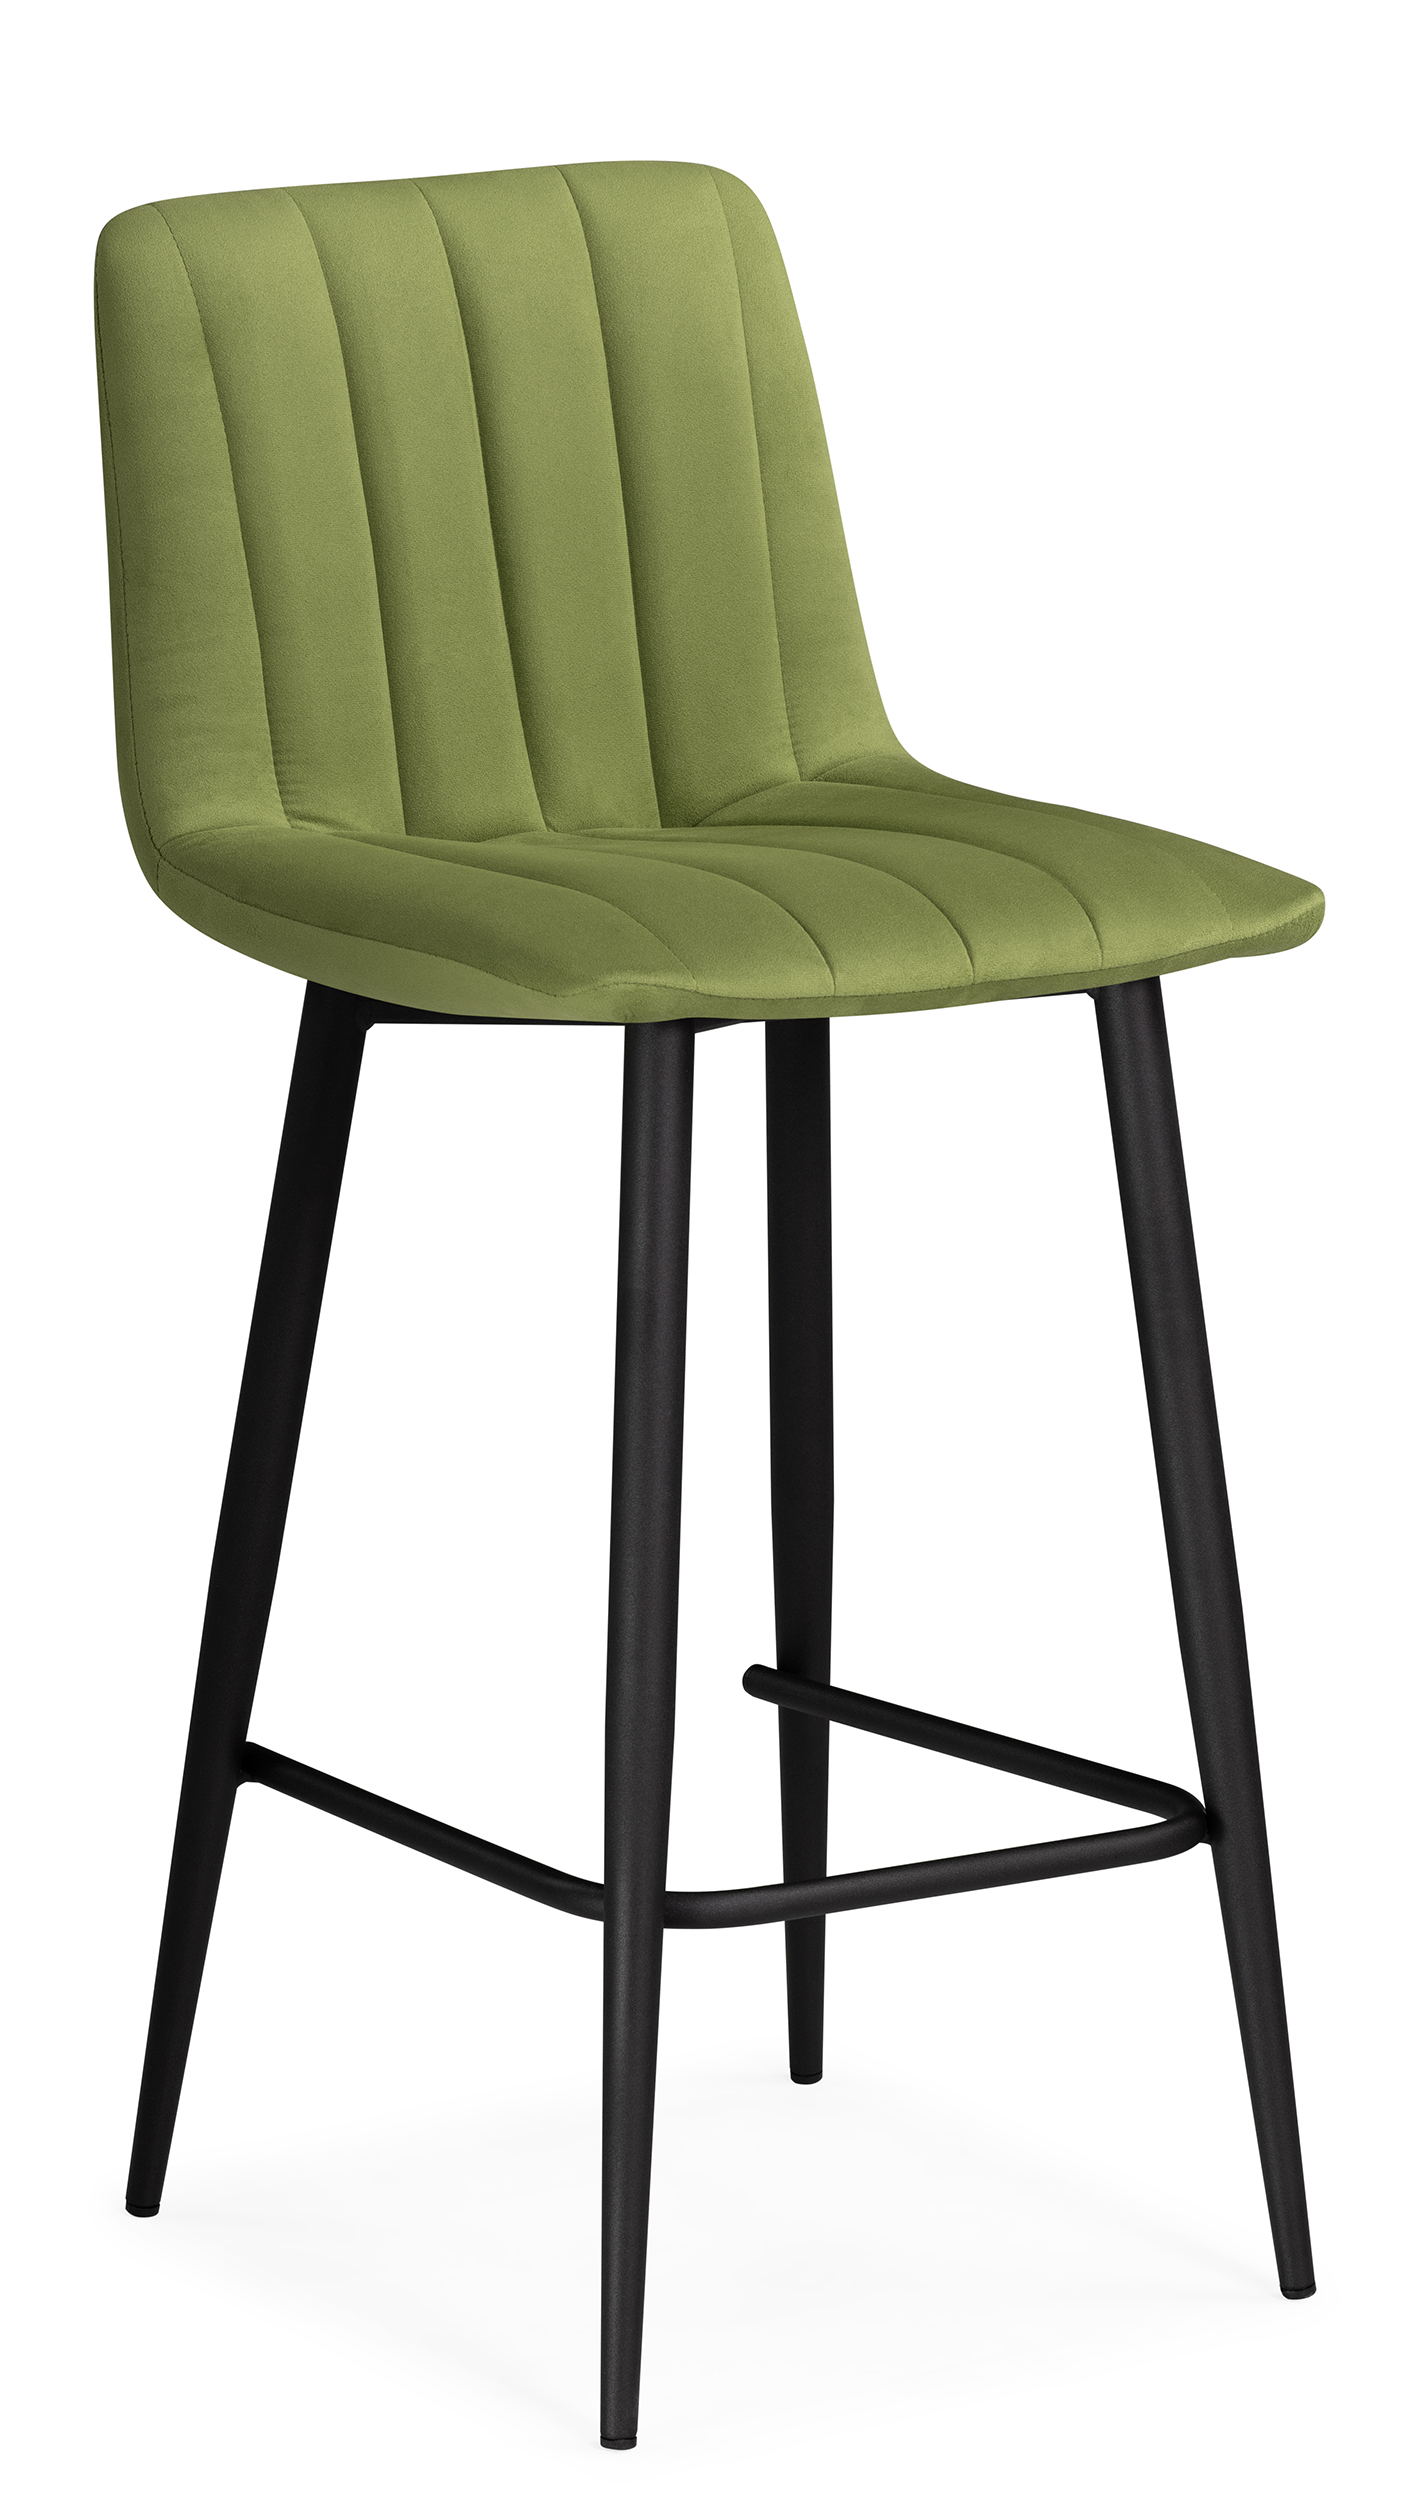 Полубарный стул Мебельные решения Дани зеленый / черный